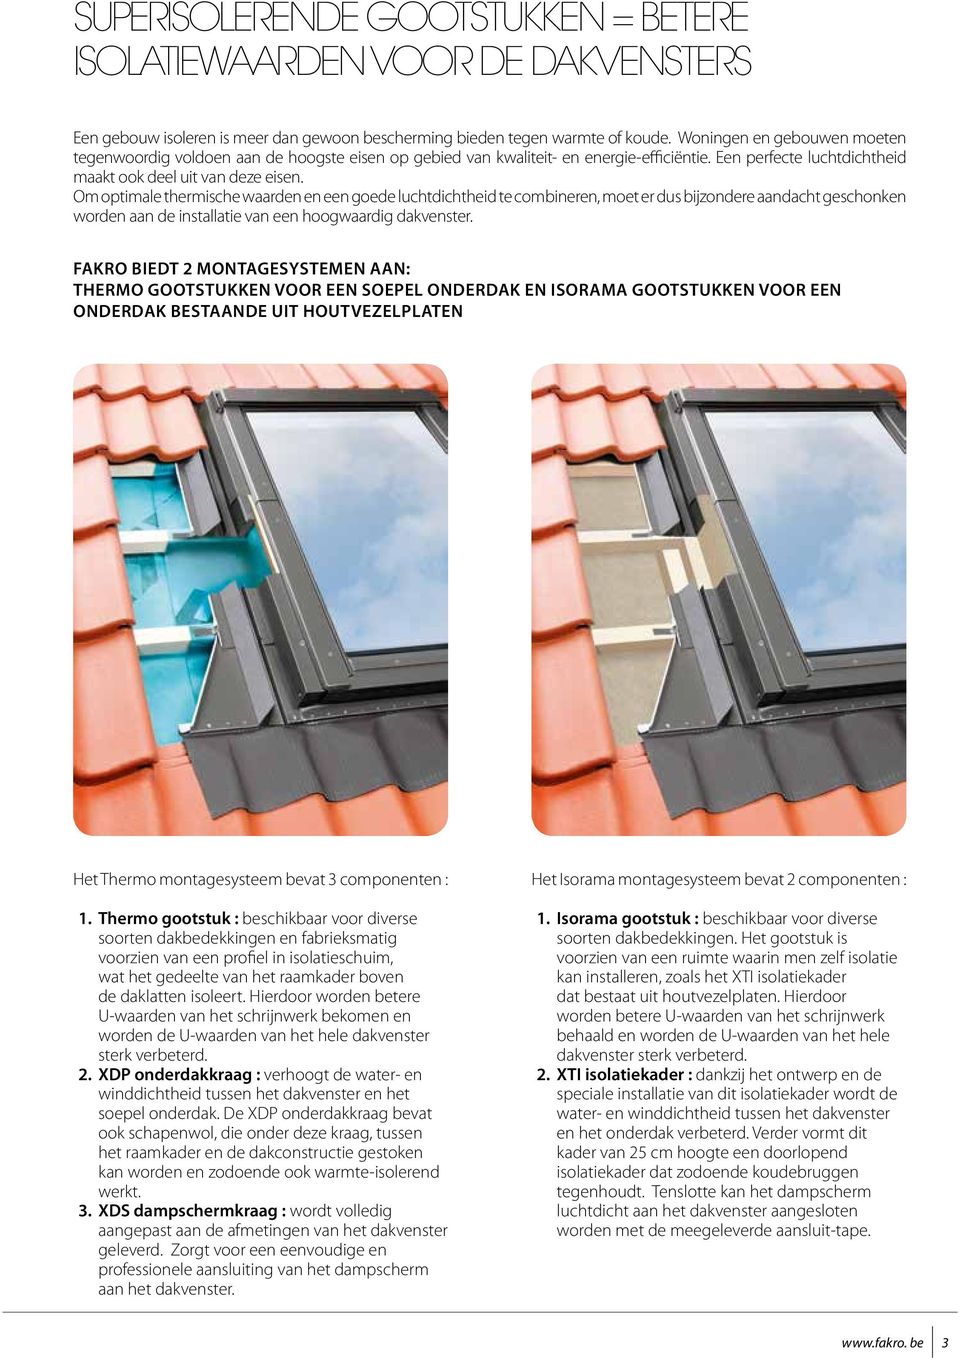 Om optimale thermische waarden en een goede luchtdichtheid te combineren, moet er dus bijzondere aandacht geschonken worden aan de installatie van een hoogwaardig dakvenster.